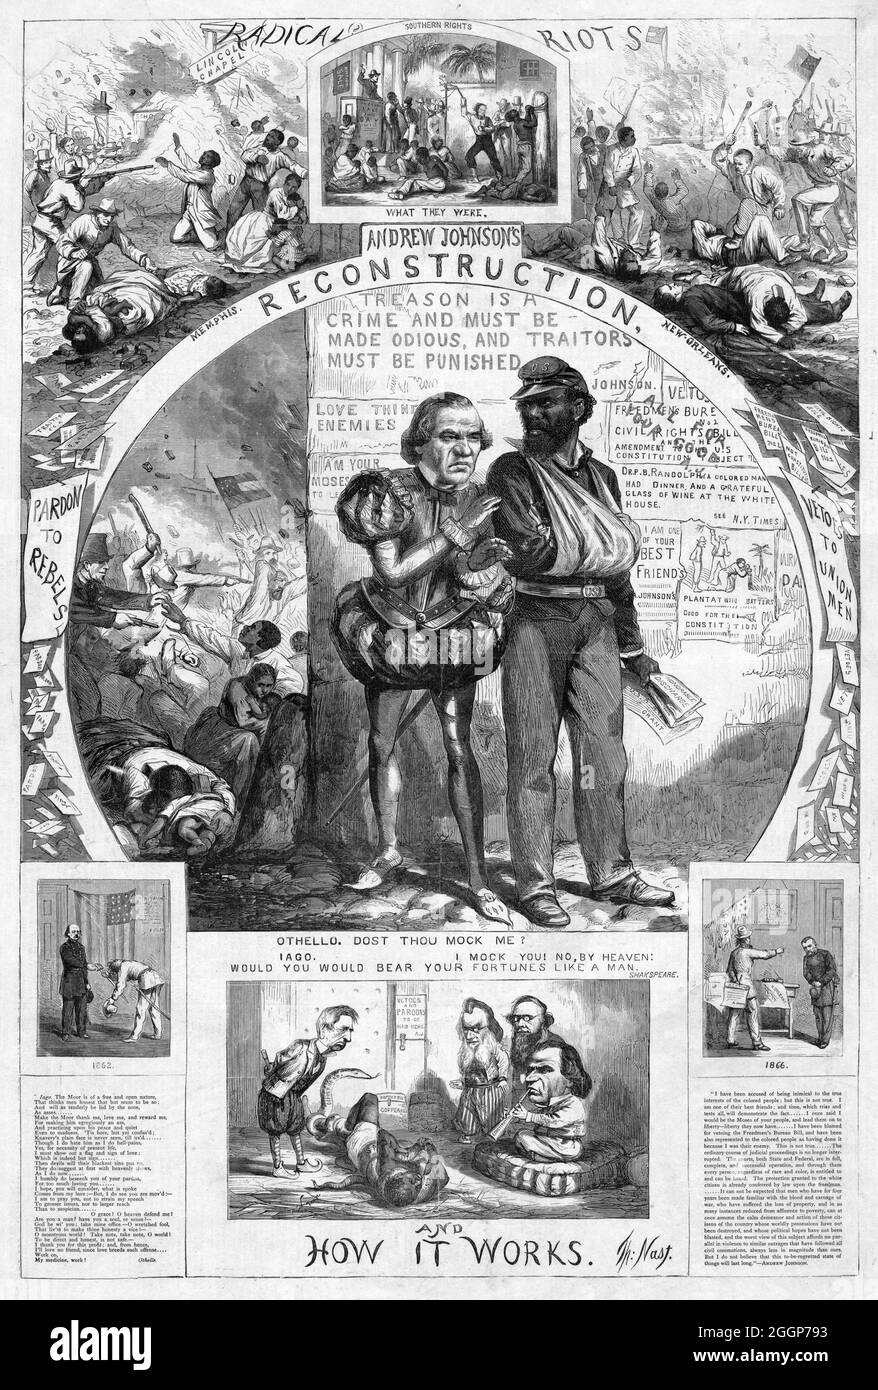 « Andrew Johnson's reconstruction and How it Works », une caricature politique de Thomas Nast (1840-1902) montrant Andrew Johnson comme le trompeur Iago qui a trahi Othello, décrit ici comme un vétéran de la guerre de Sécession en Afrique américaine.Inclut des scènes d'une vente aux enchères d'esclaves, des blancs qui attaquent les noirs à Memphis et à la Nouvelle-Orléans, et des serpents 'Copperhead' et 'C.S.A.' enveloppés autour d'un homme noir tandis qu'Andrew Johnson et d'autres regardent.Harper's Weekly, le 1 septembre 1866. Banque D'Images